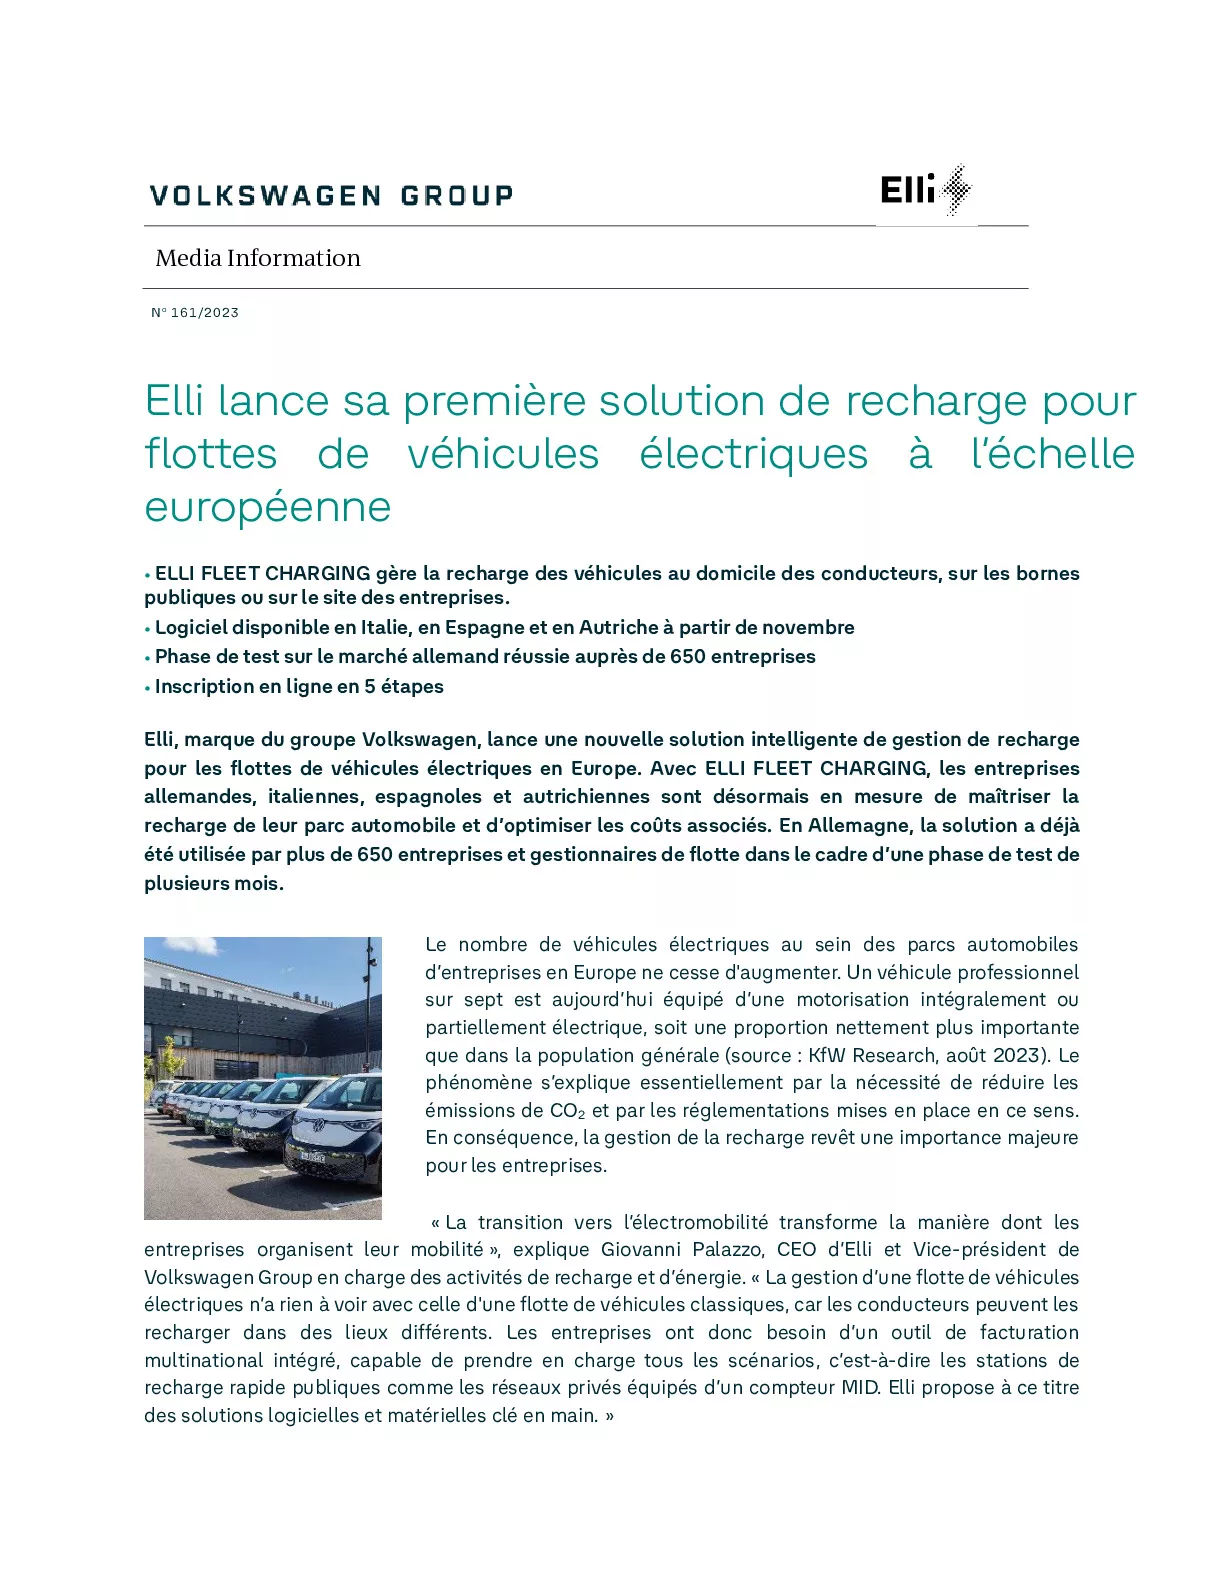 Elli lance sa première solution de recharge pour flottes de véhicules électriques à l’échelle européenne-pdf